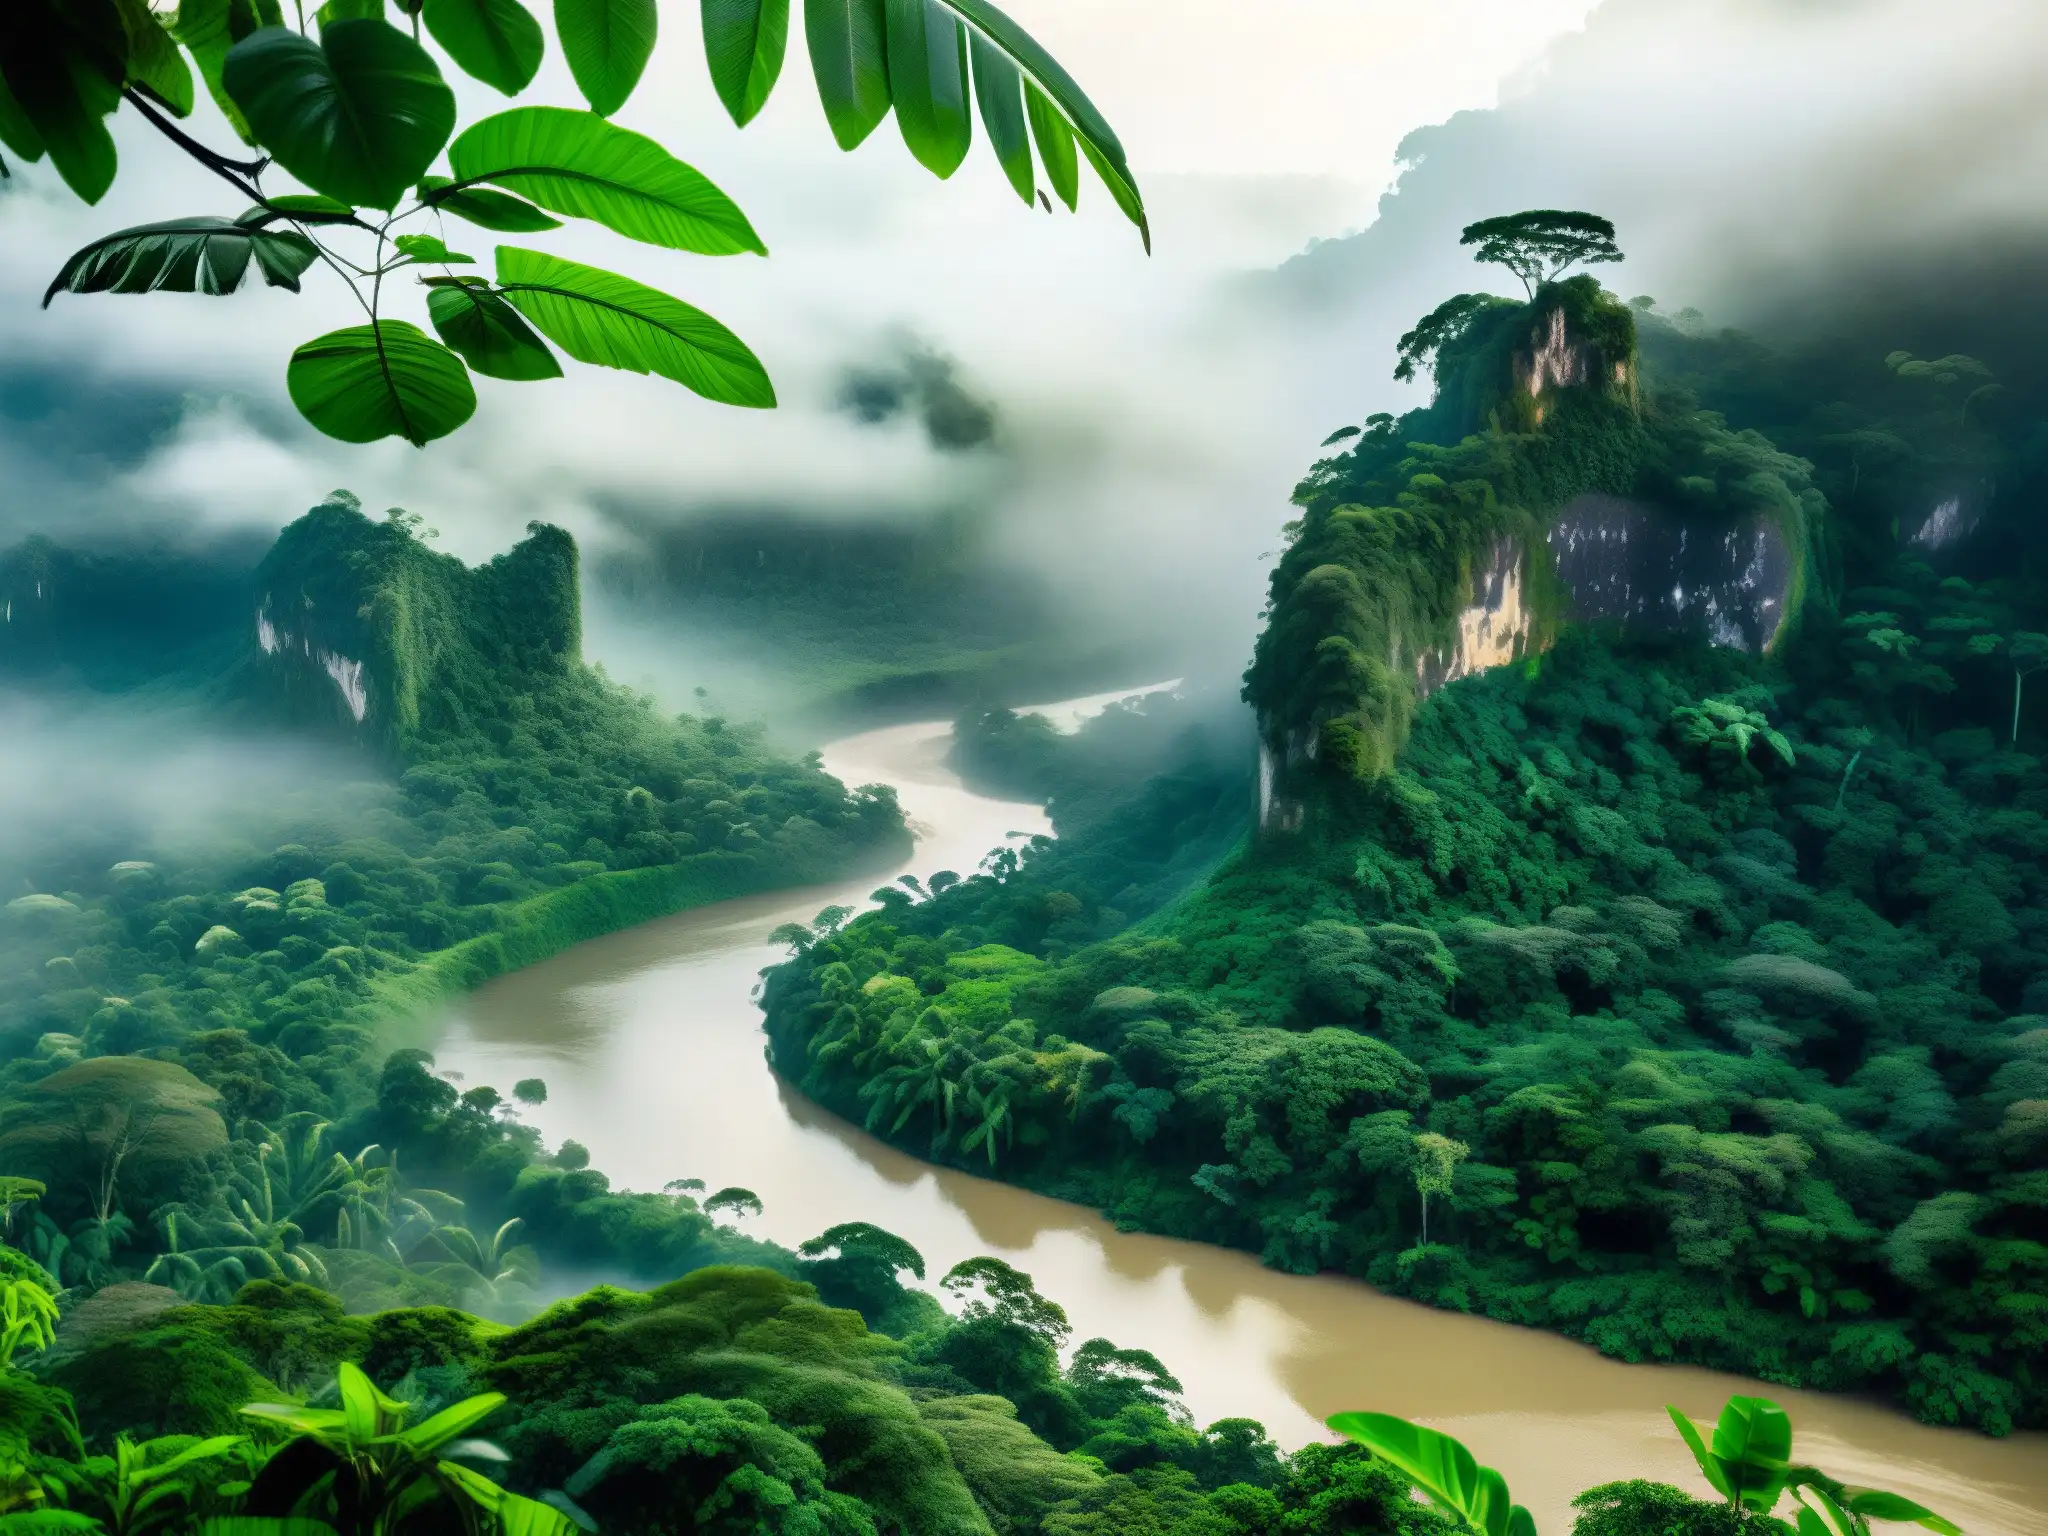 Imagen de la densa selva amazónica con río serpenteante, vegetación exuberante y atmósfera mística